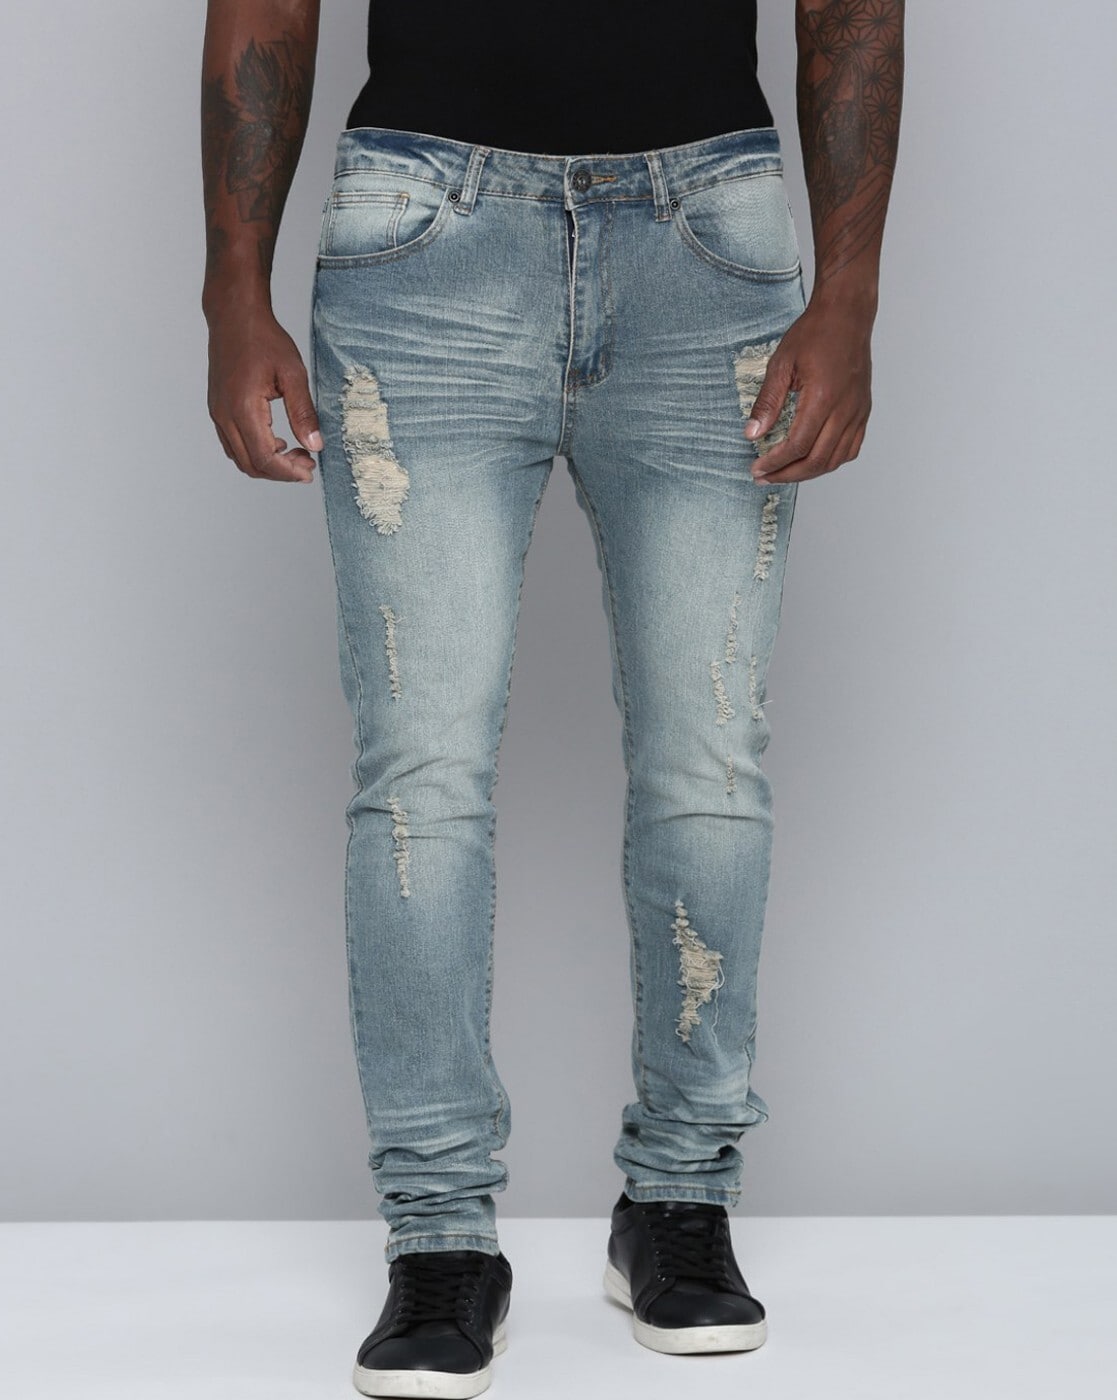 Blue Skinny Jeans for Men | SOUL OF NOMAD Men's Denim Akira Echelon